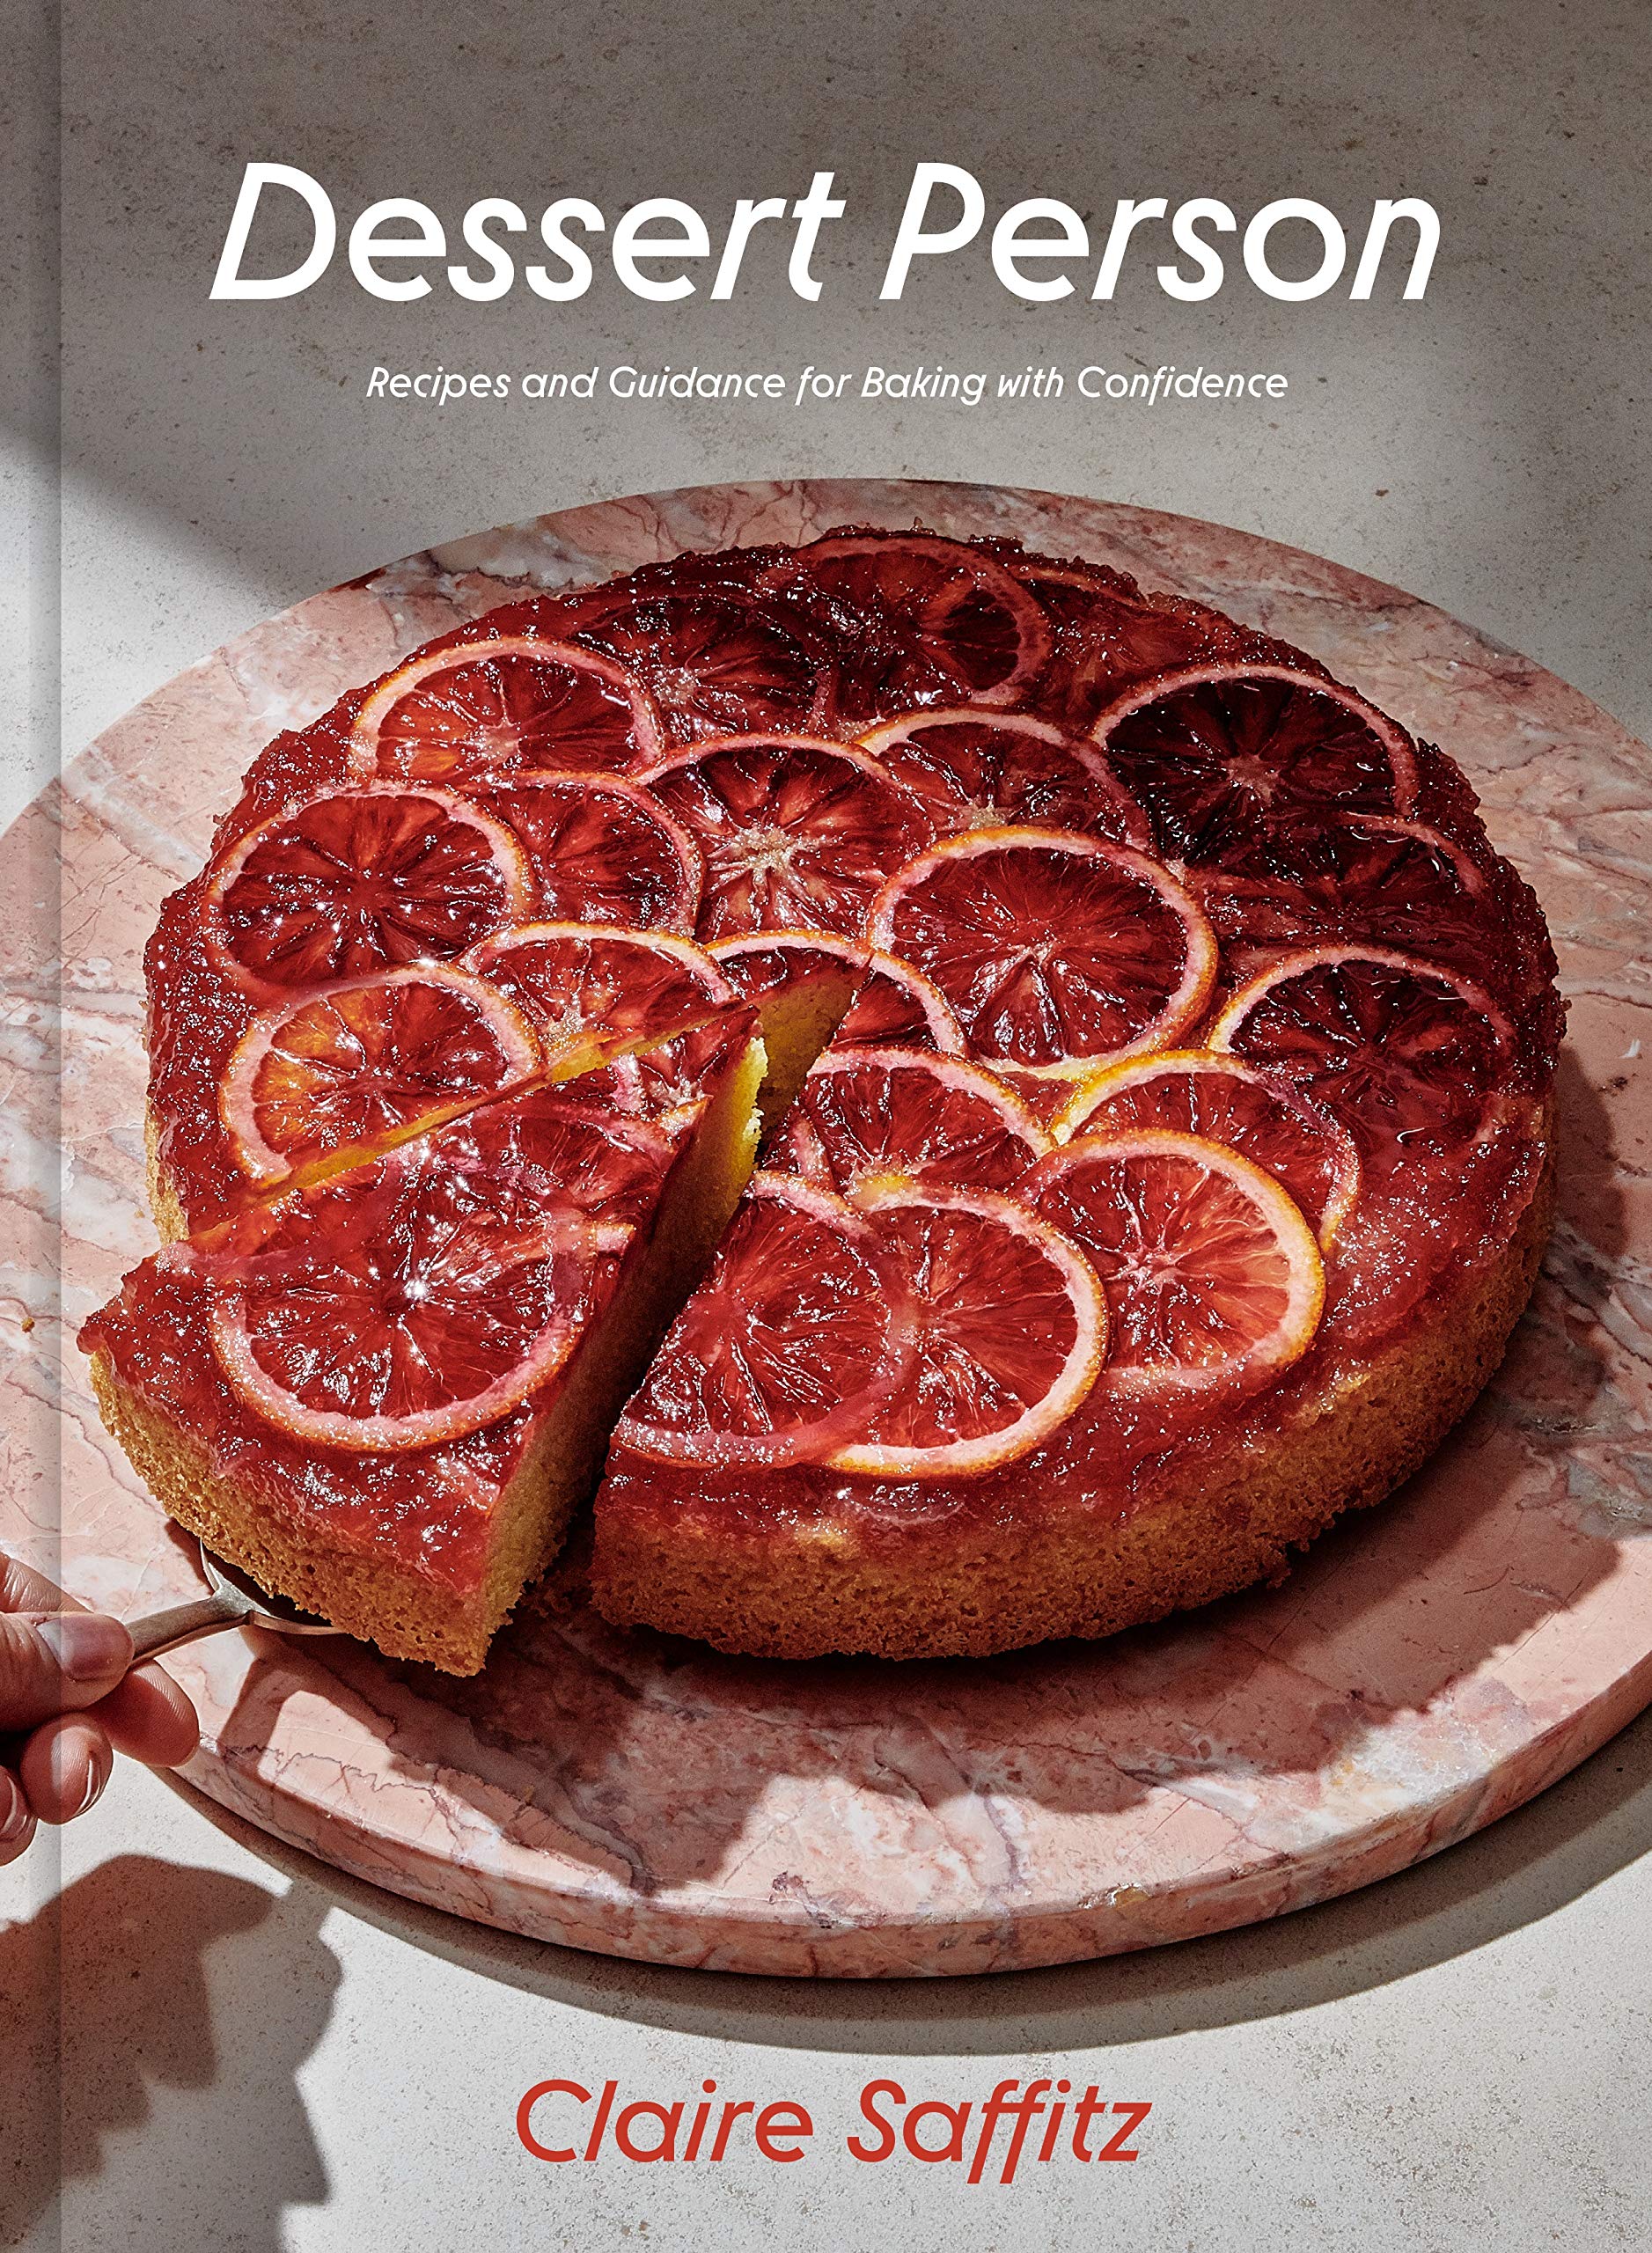 Dessert Person book cover